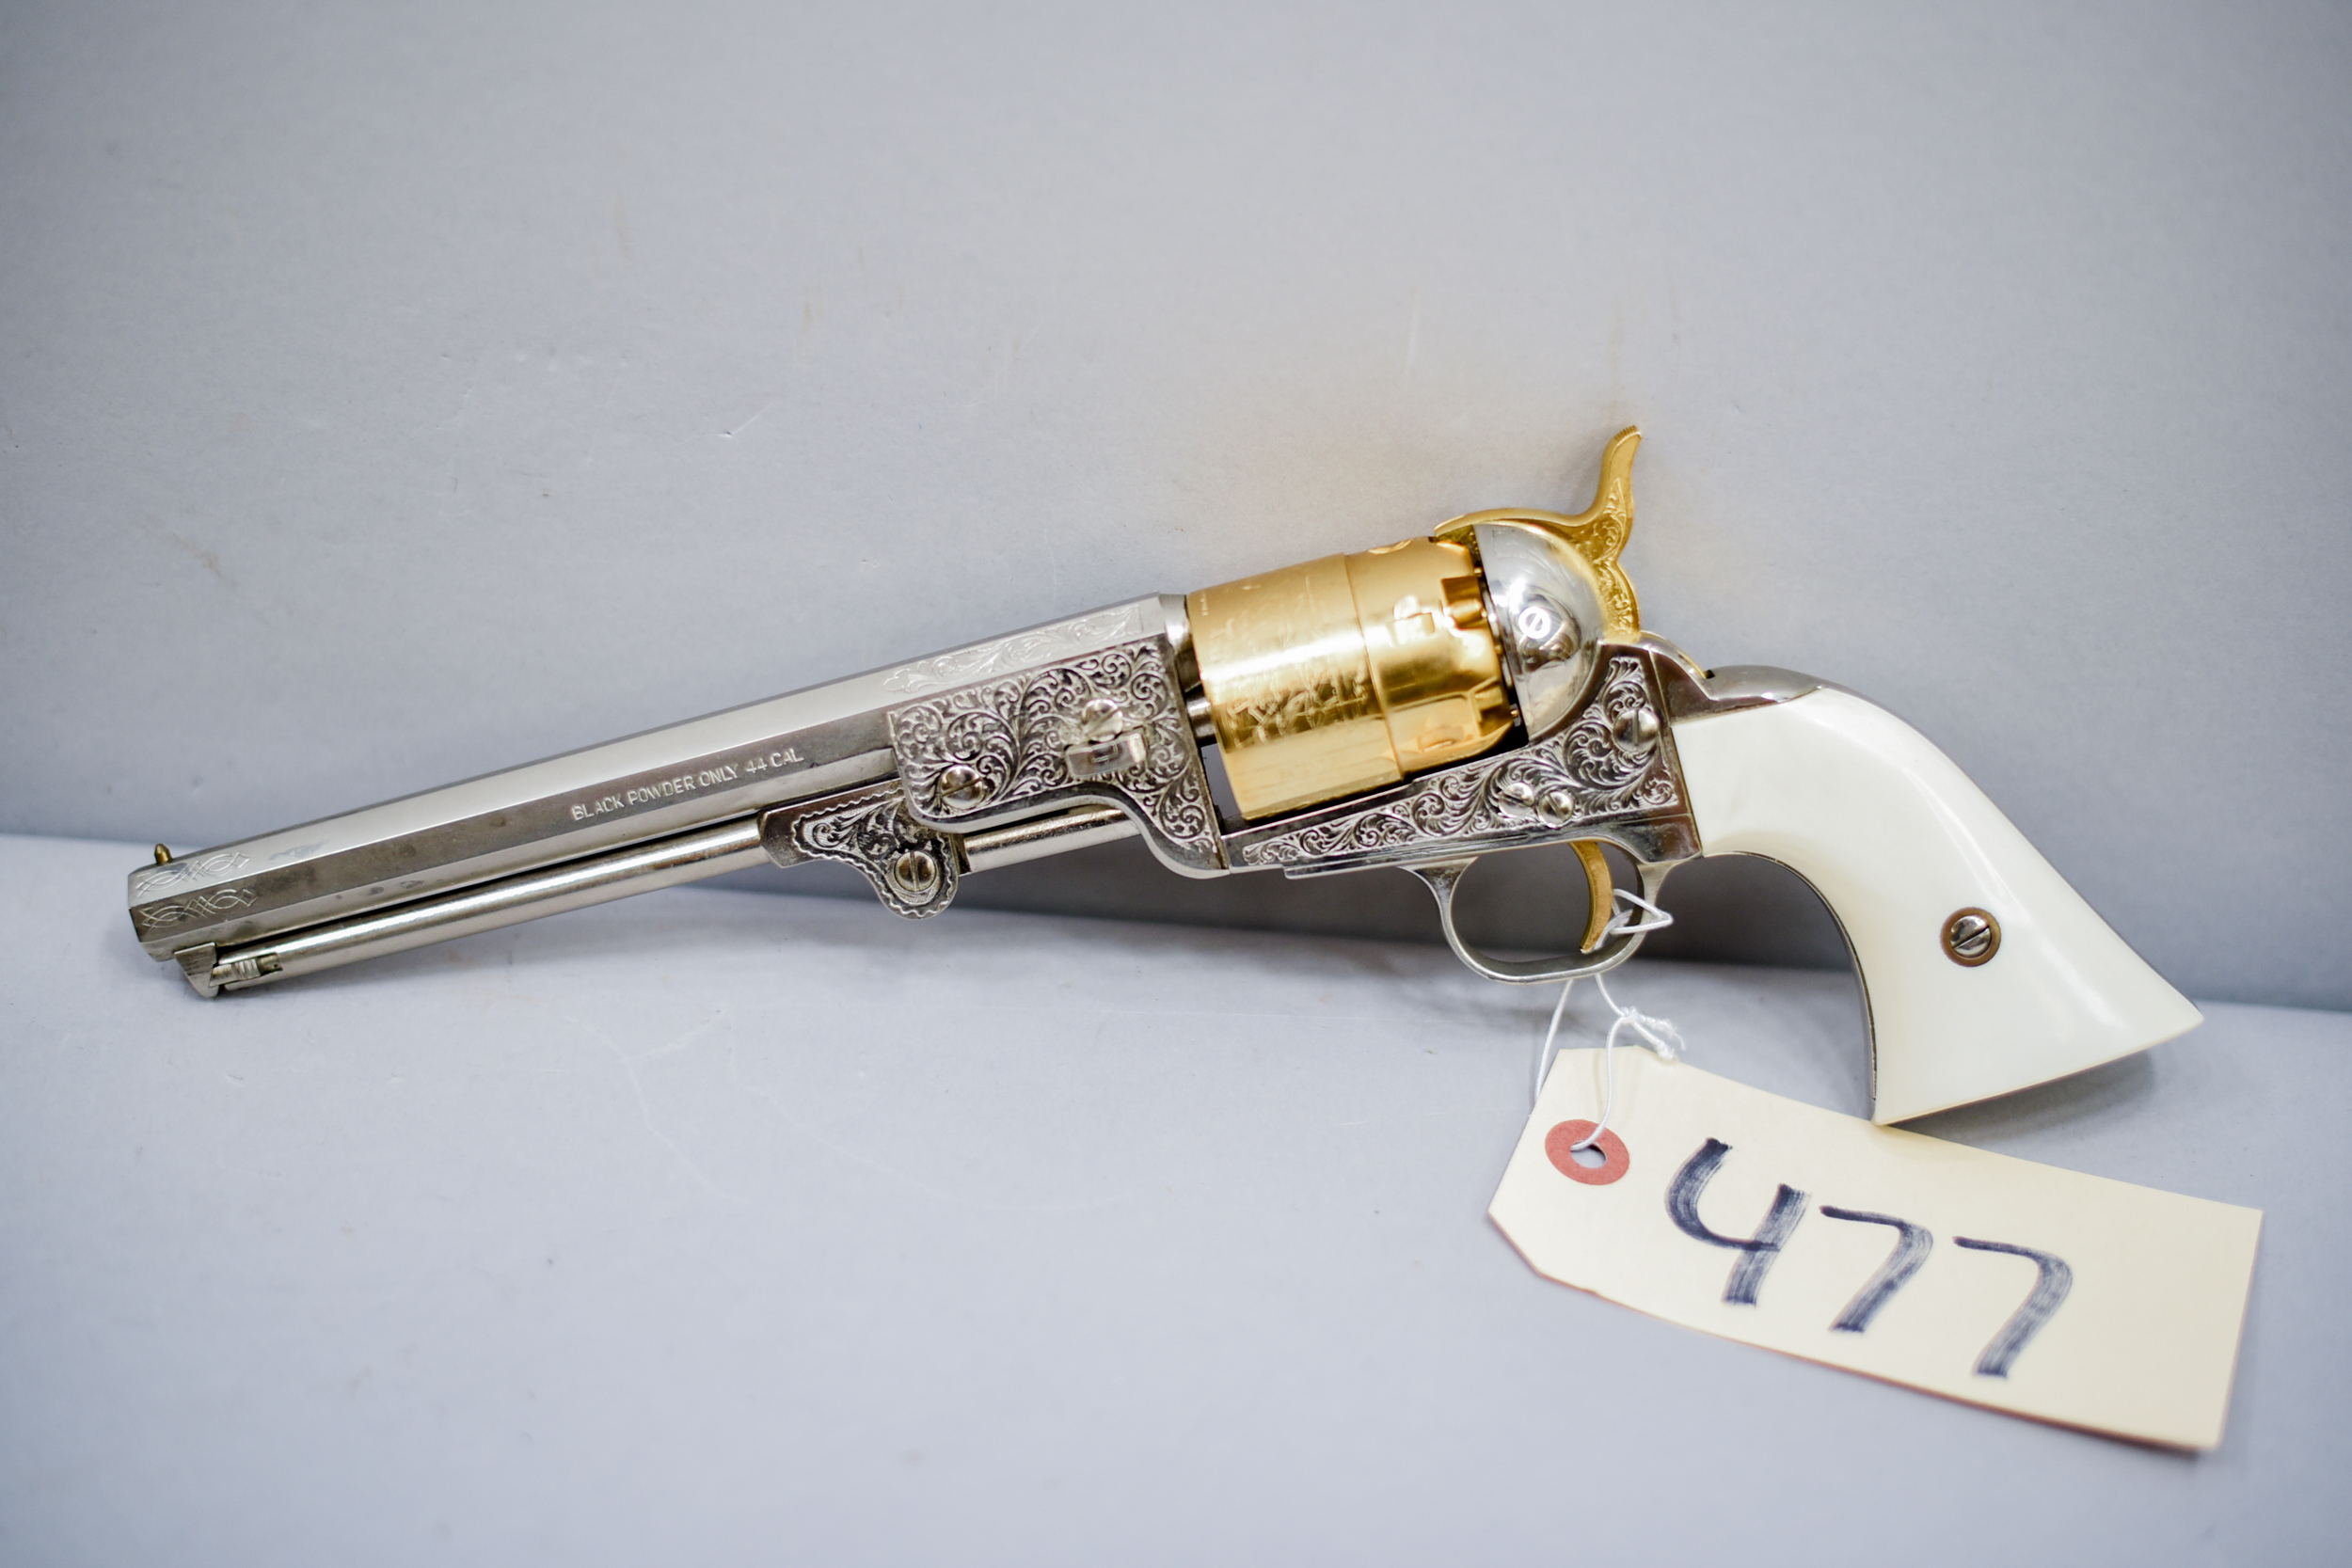 F.LLI Pietta Black Powder Revolver, 44 cal, s/544896,7 3/8 octagonal  barrel, Made in Italy - Musser Bros Inc